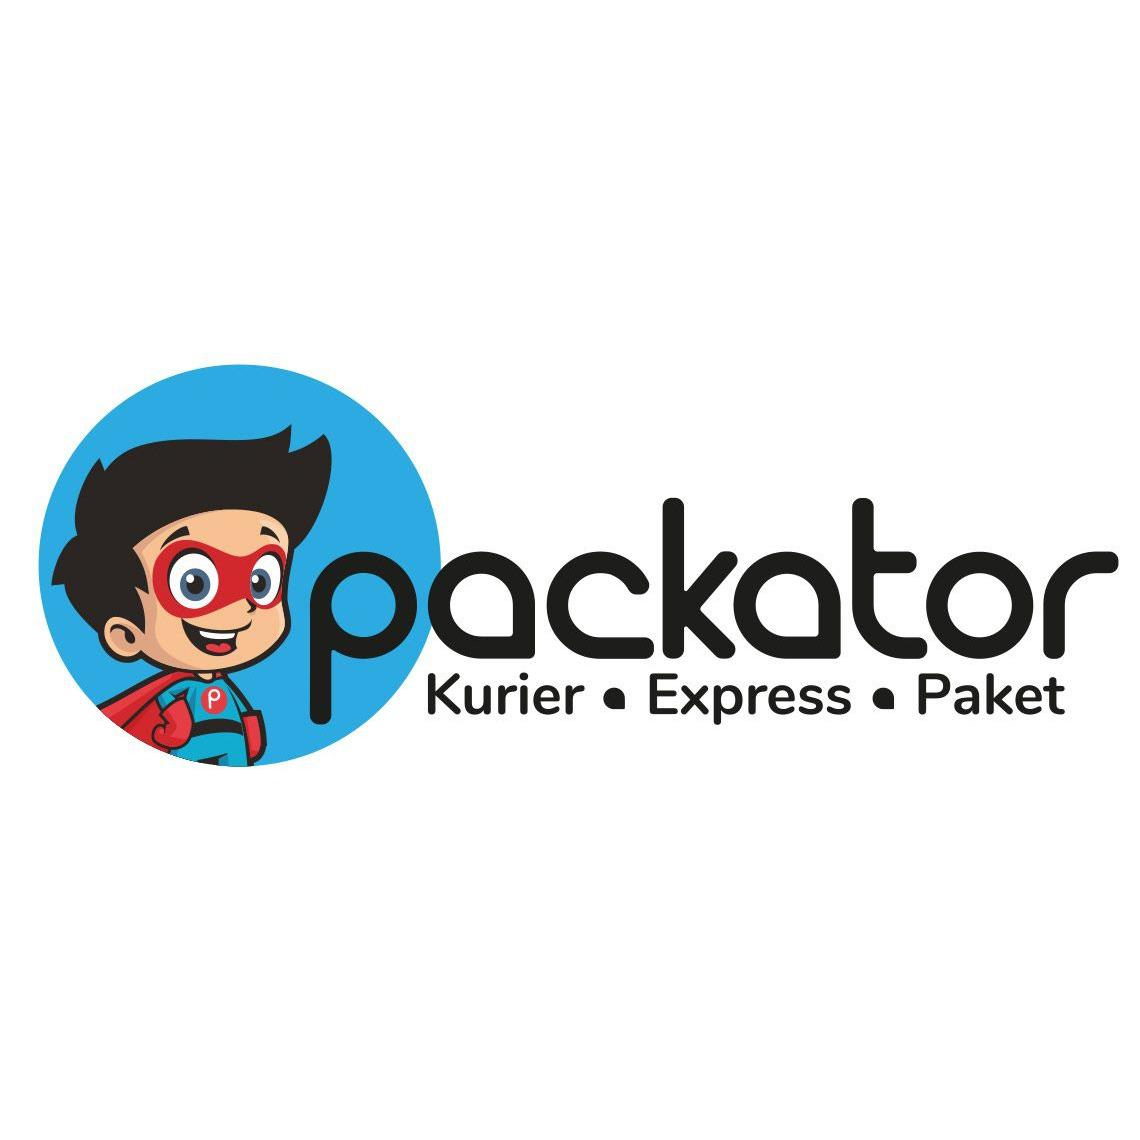 Packator - Kurierdienst Berlin für Same Day Delivery & Overnight Express in Berlin - Logo